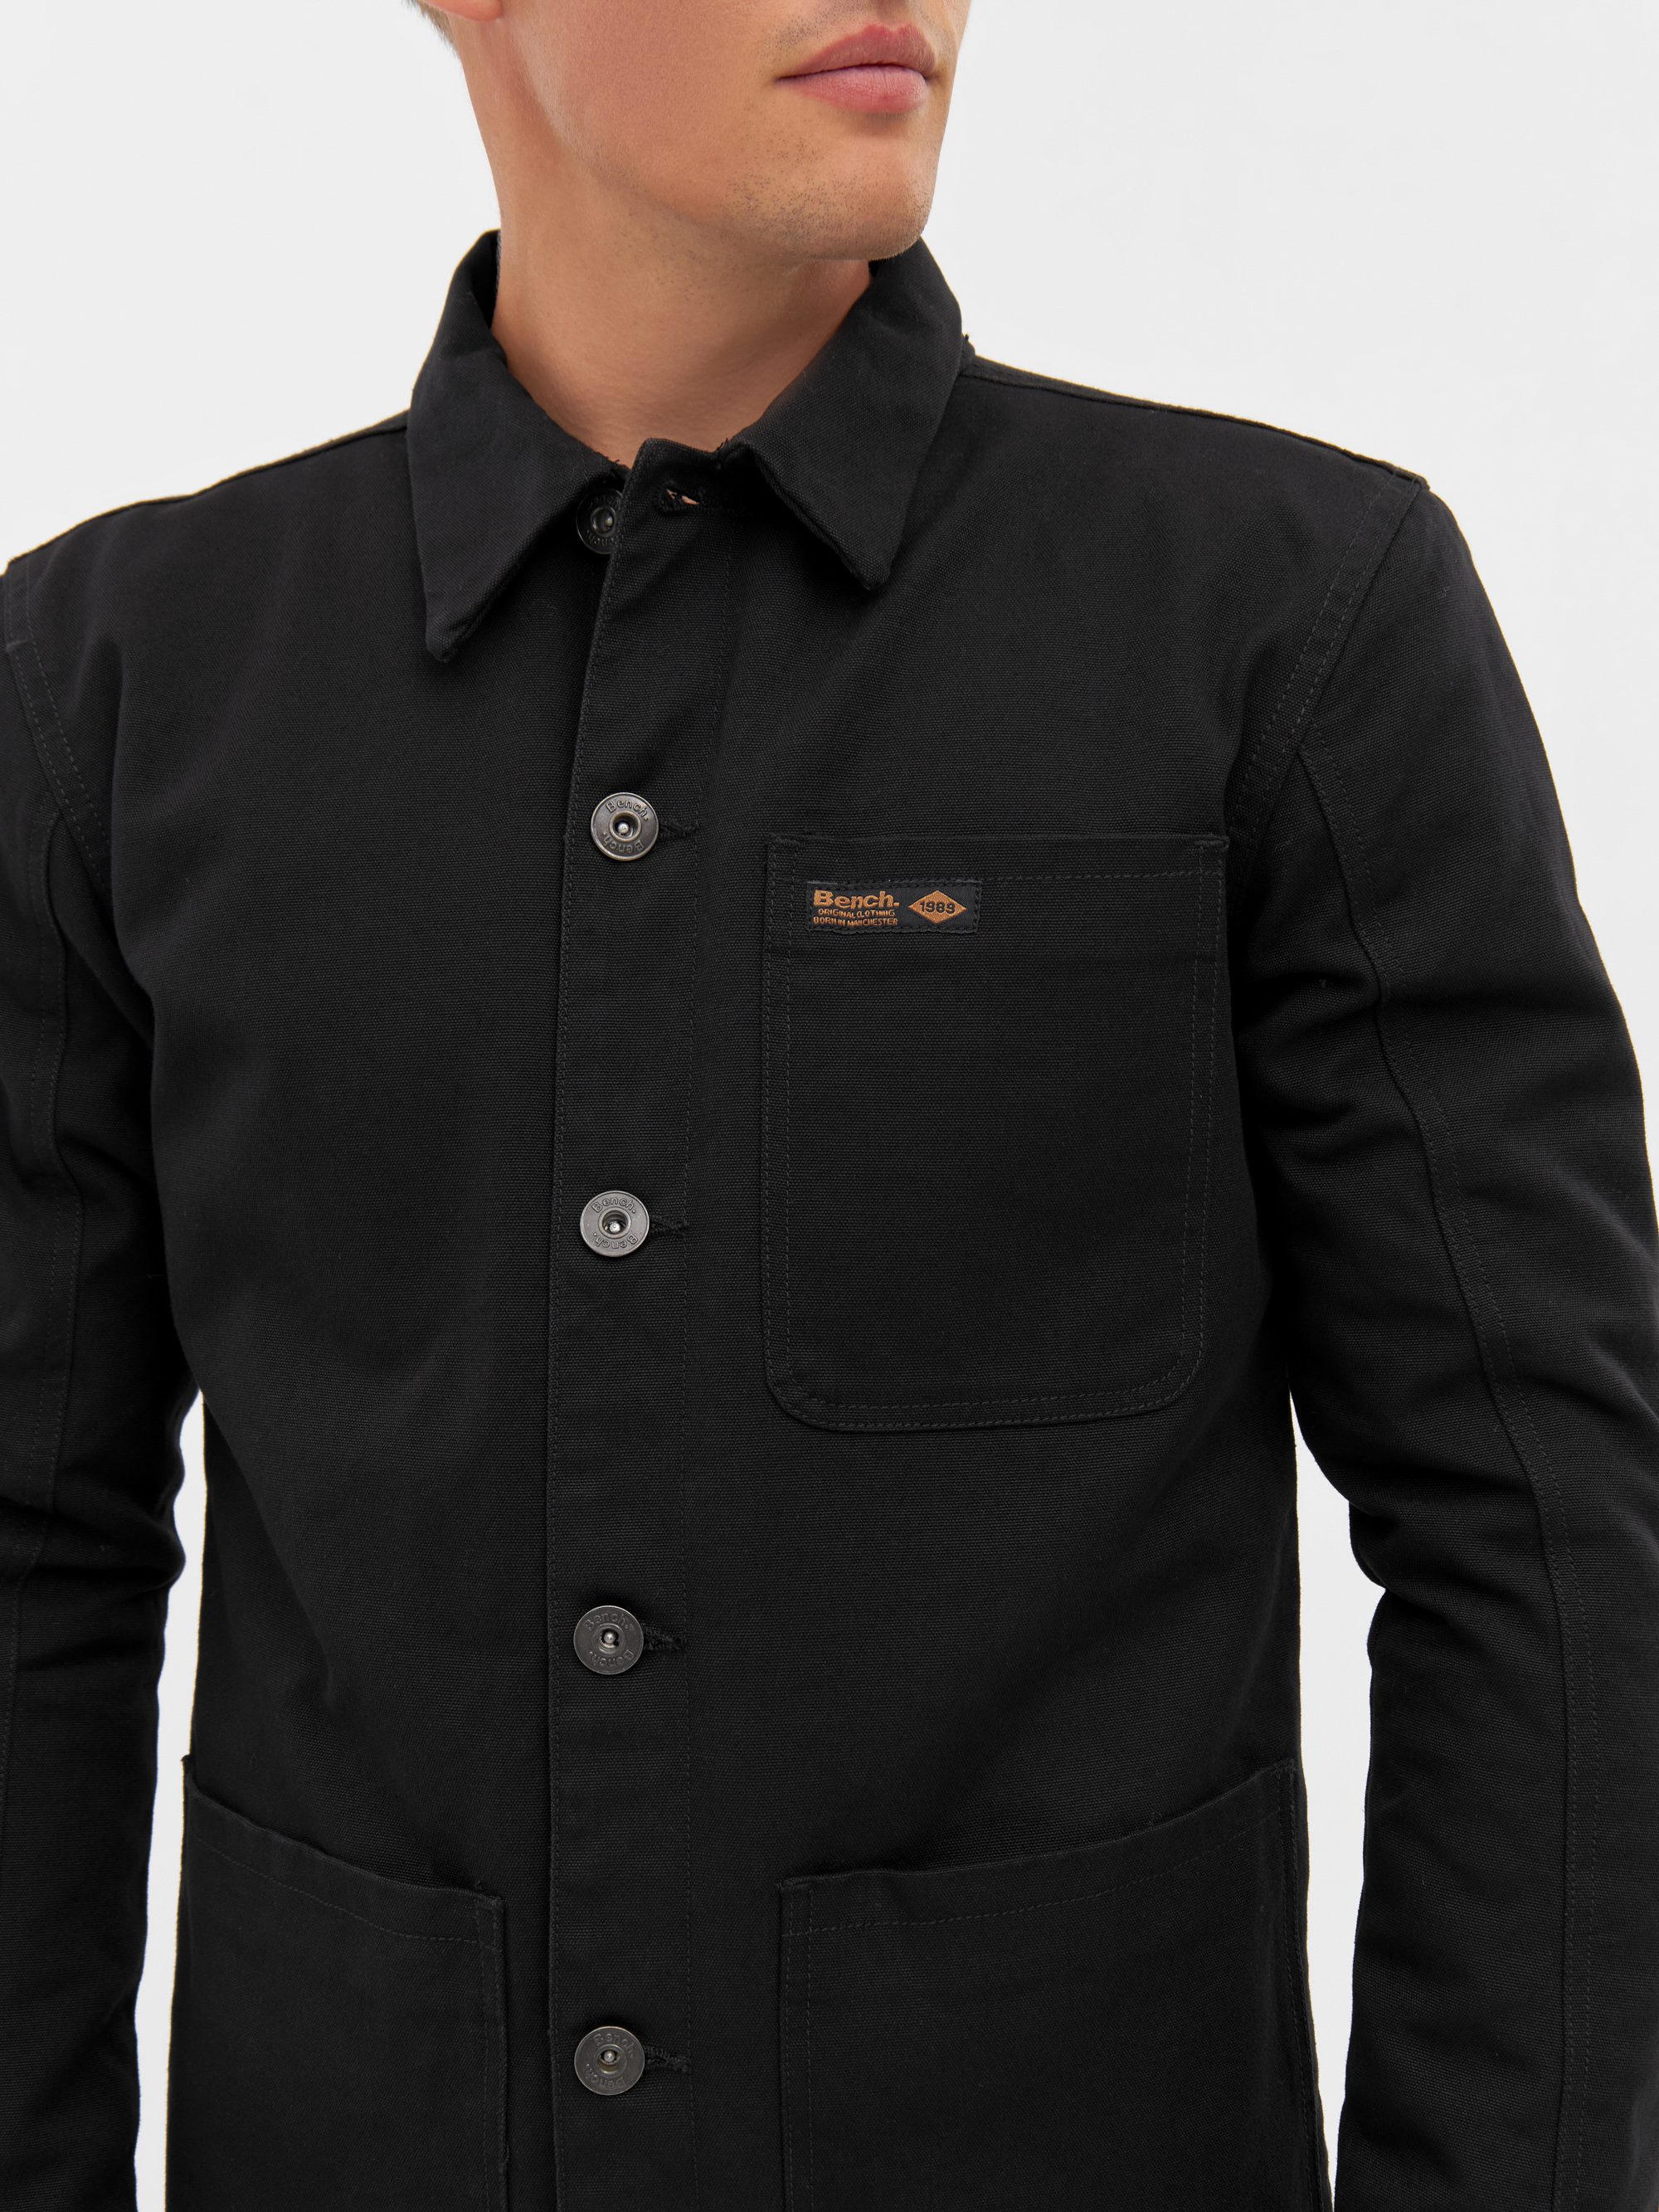 online kaufen Bench Jacke black